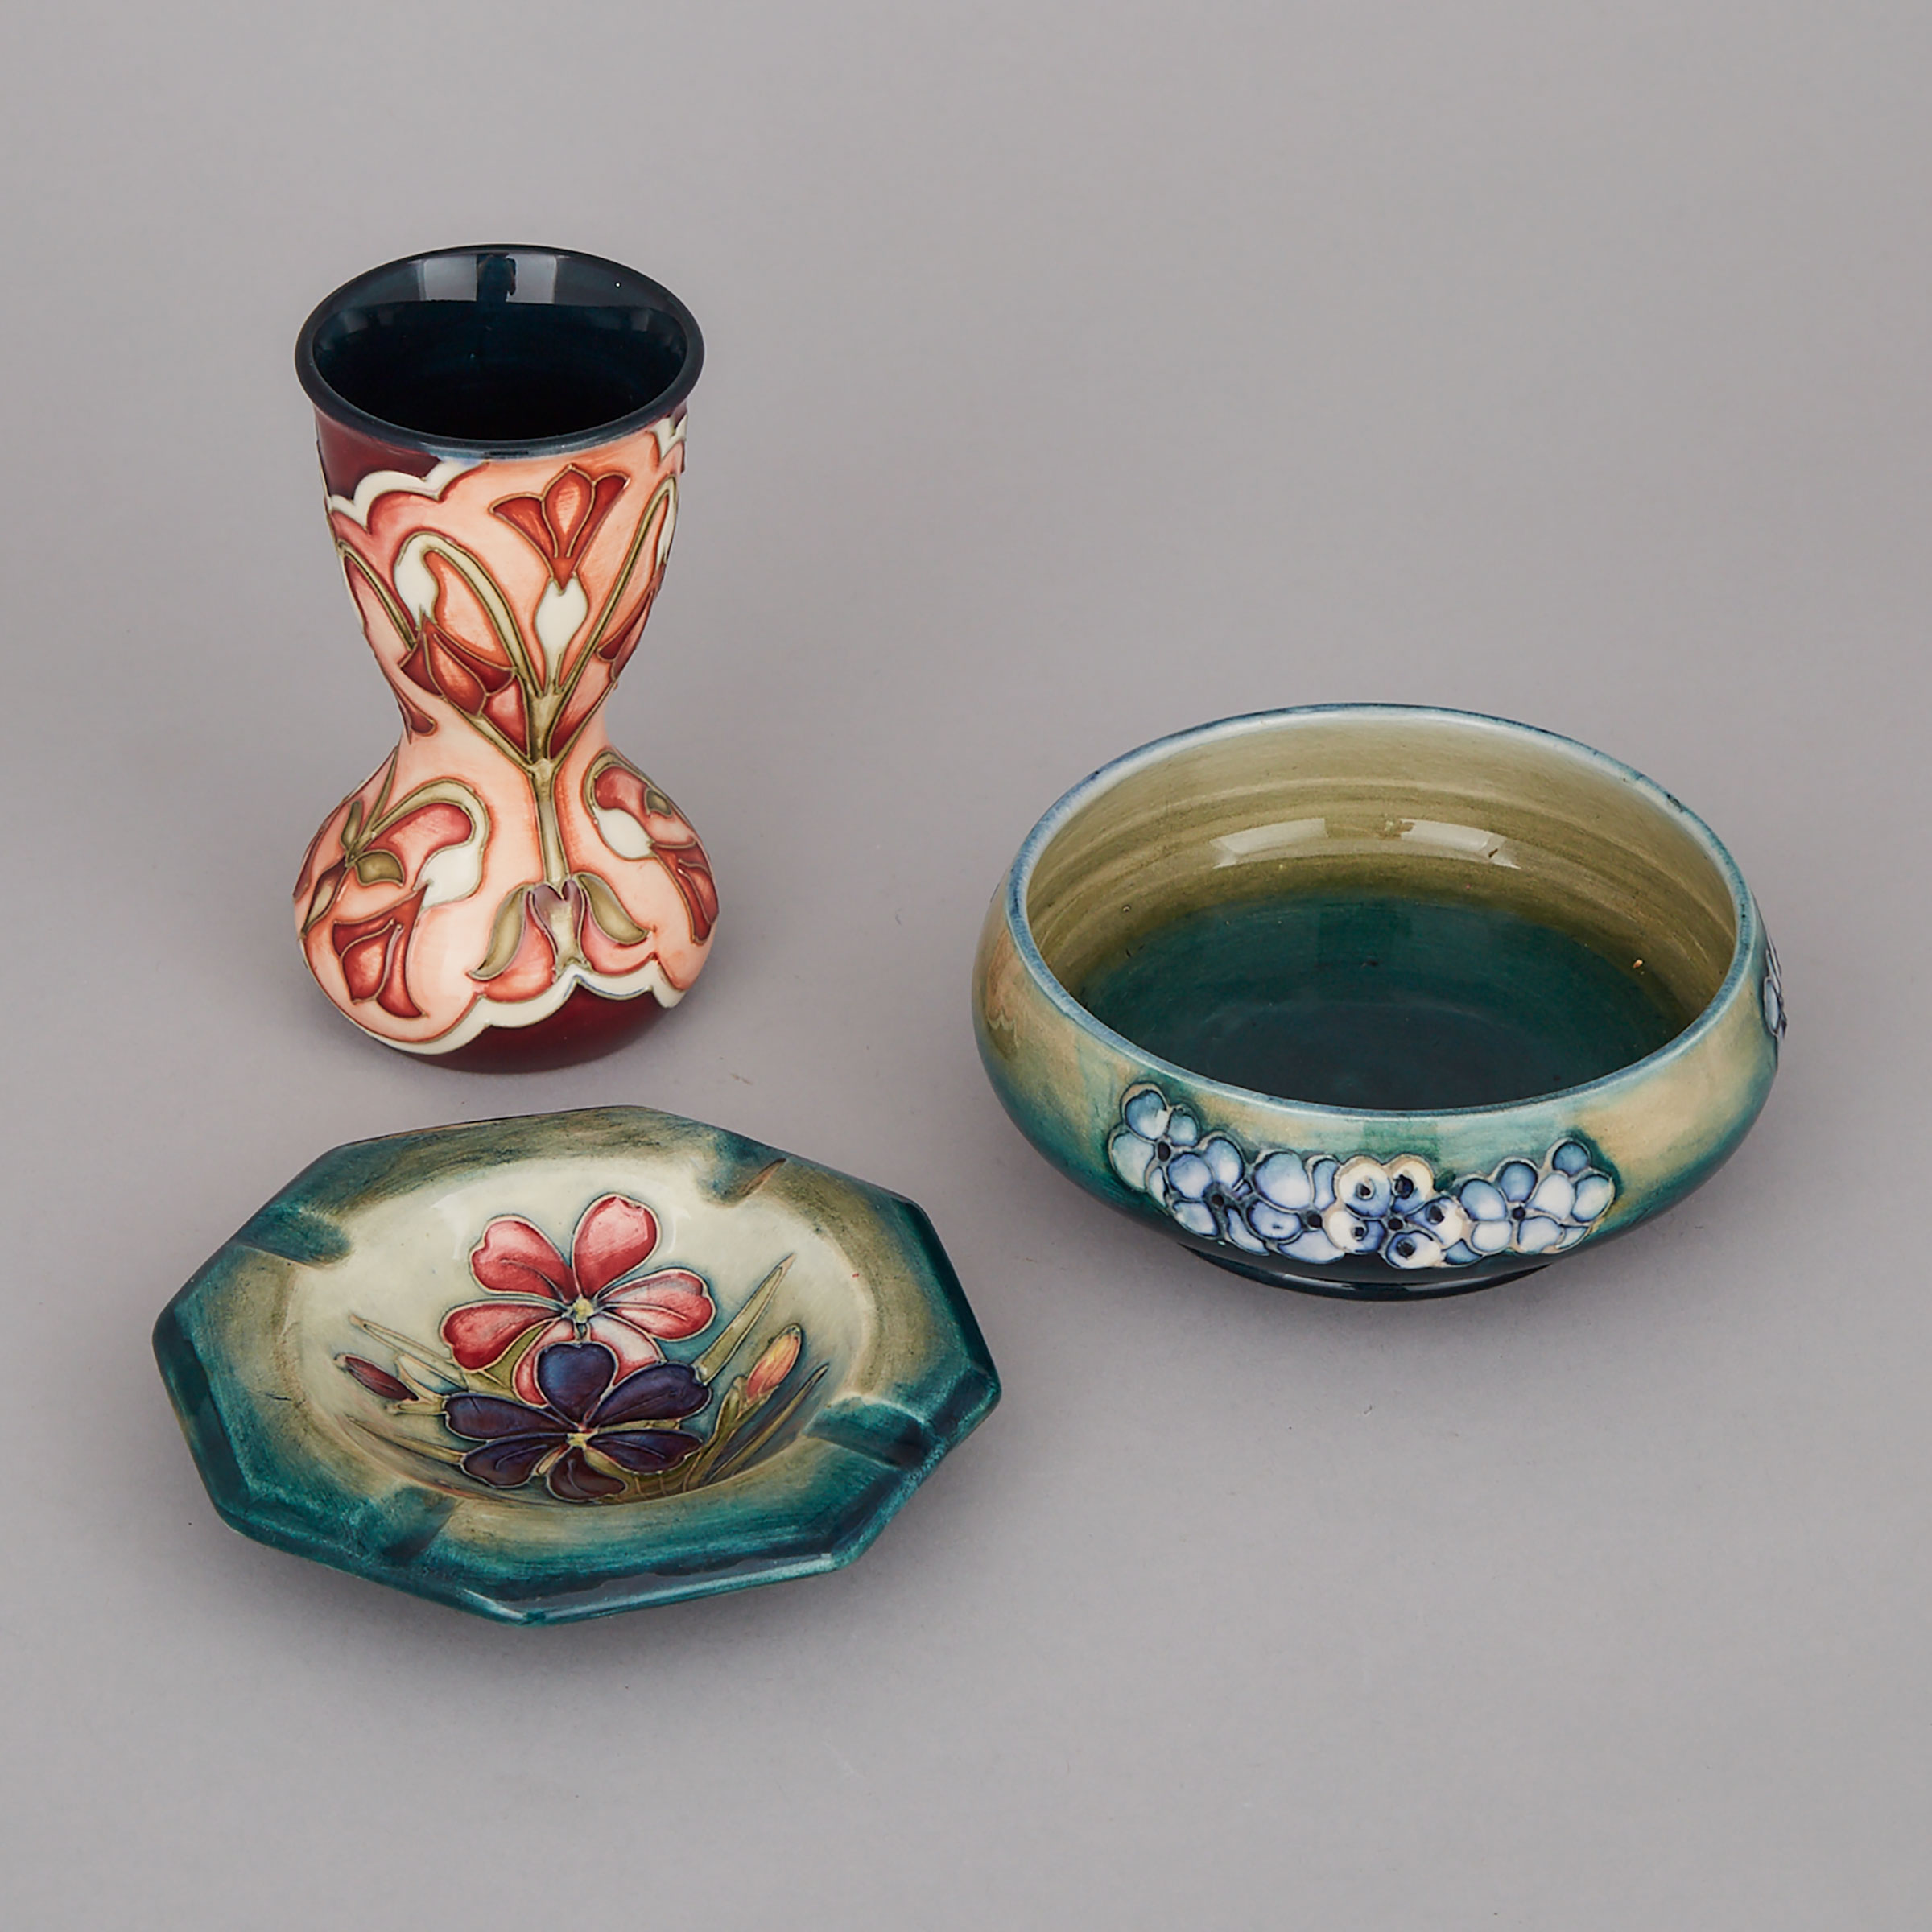 Moorcroft Ashtray, Small Vase and Bowl, 20th century